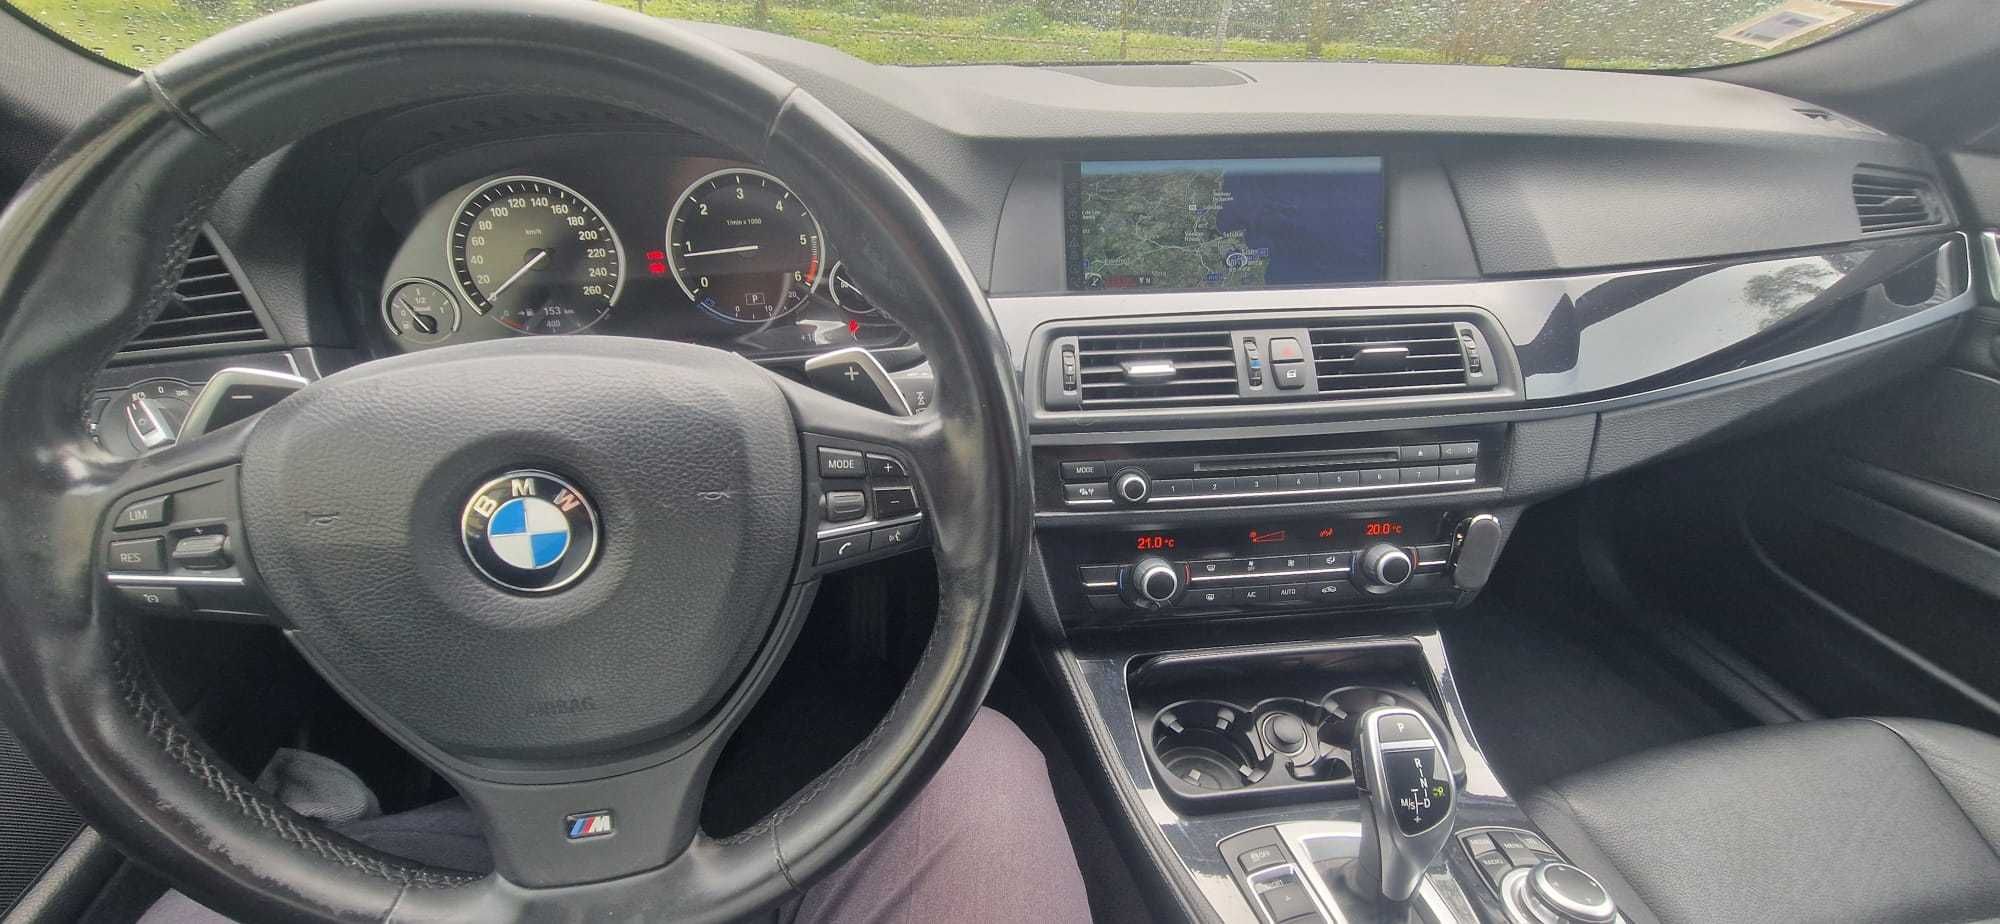 Carrinha BMW 520d Nacional